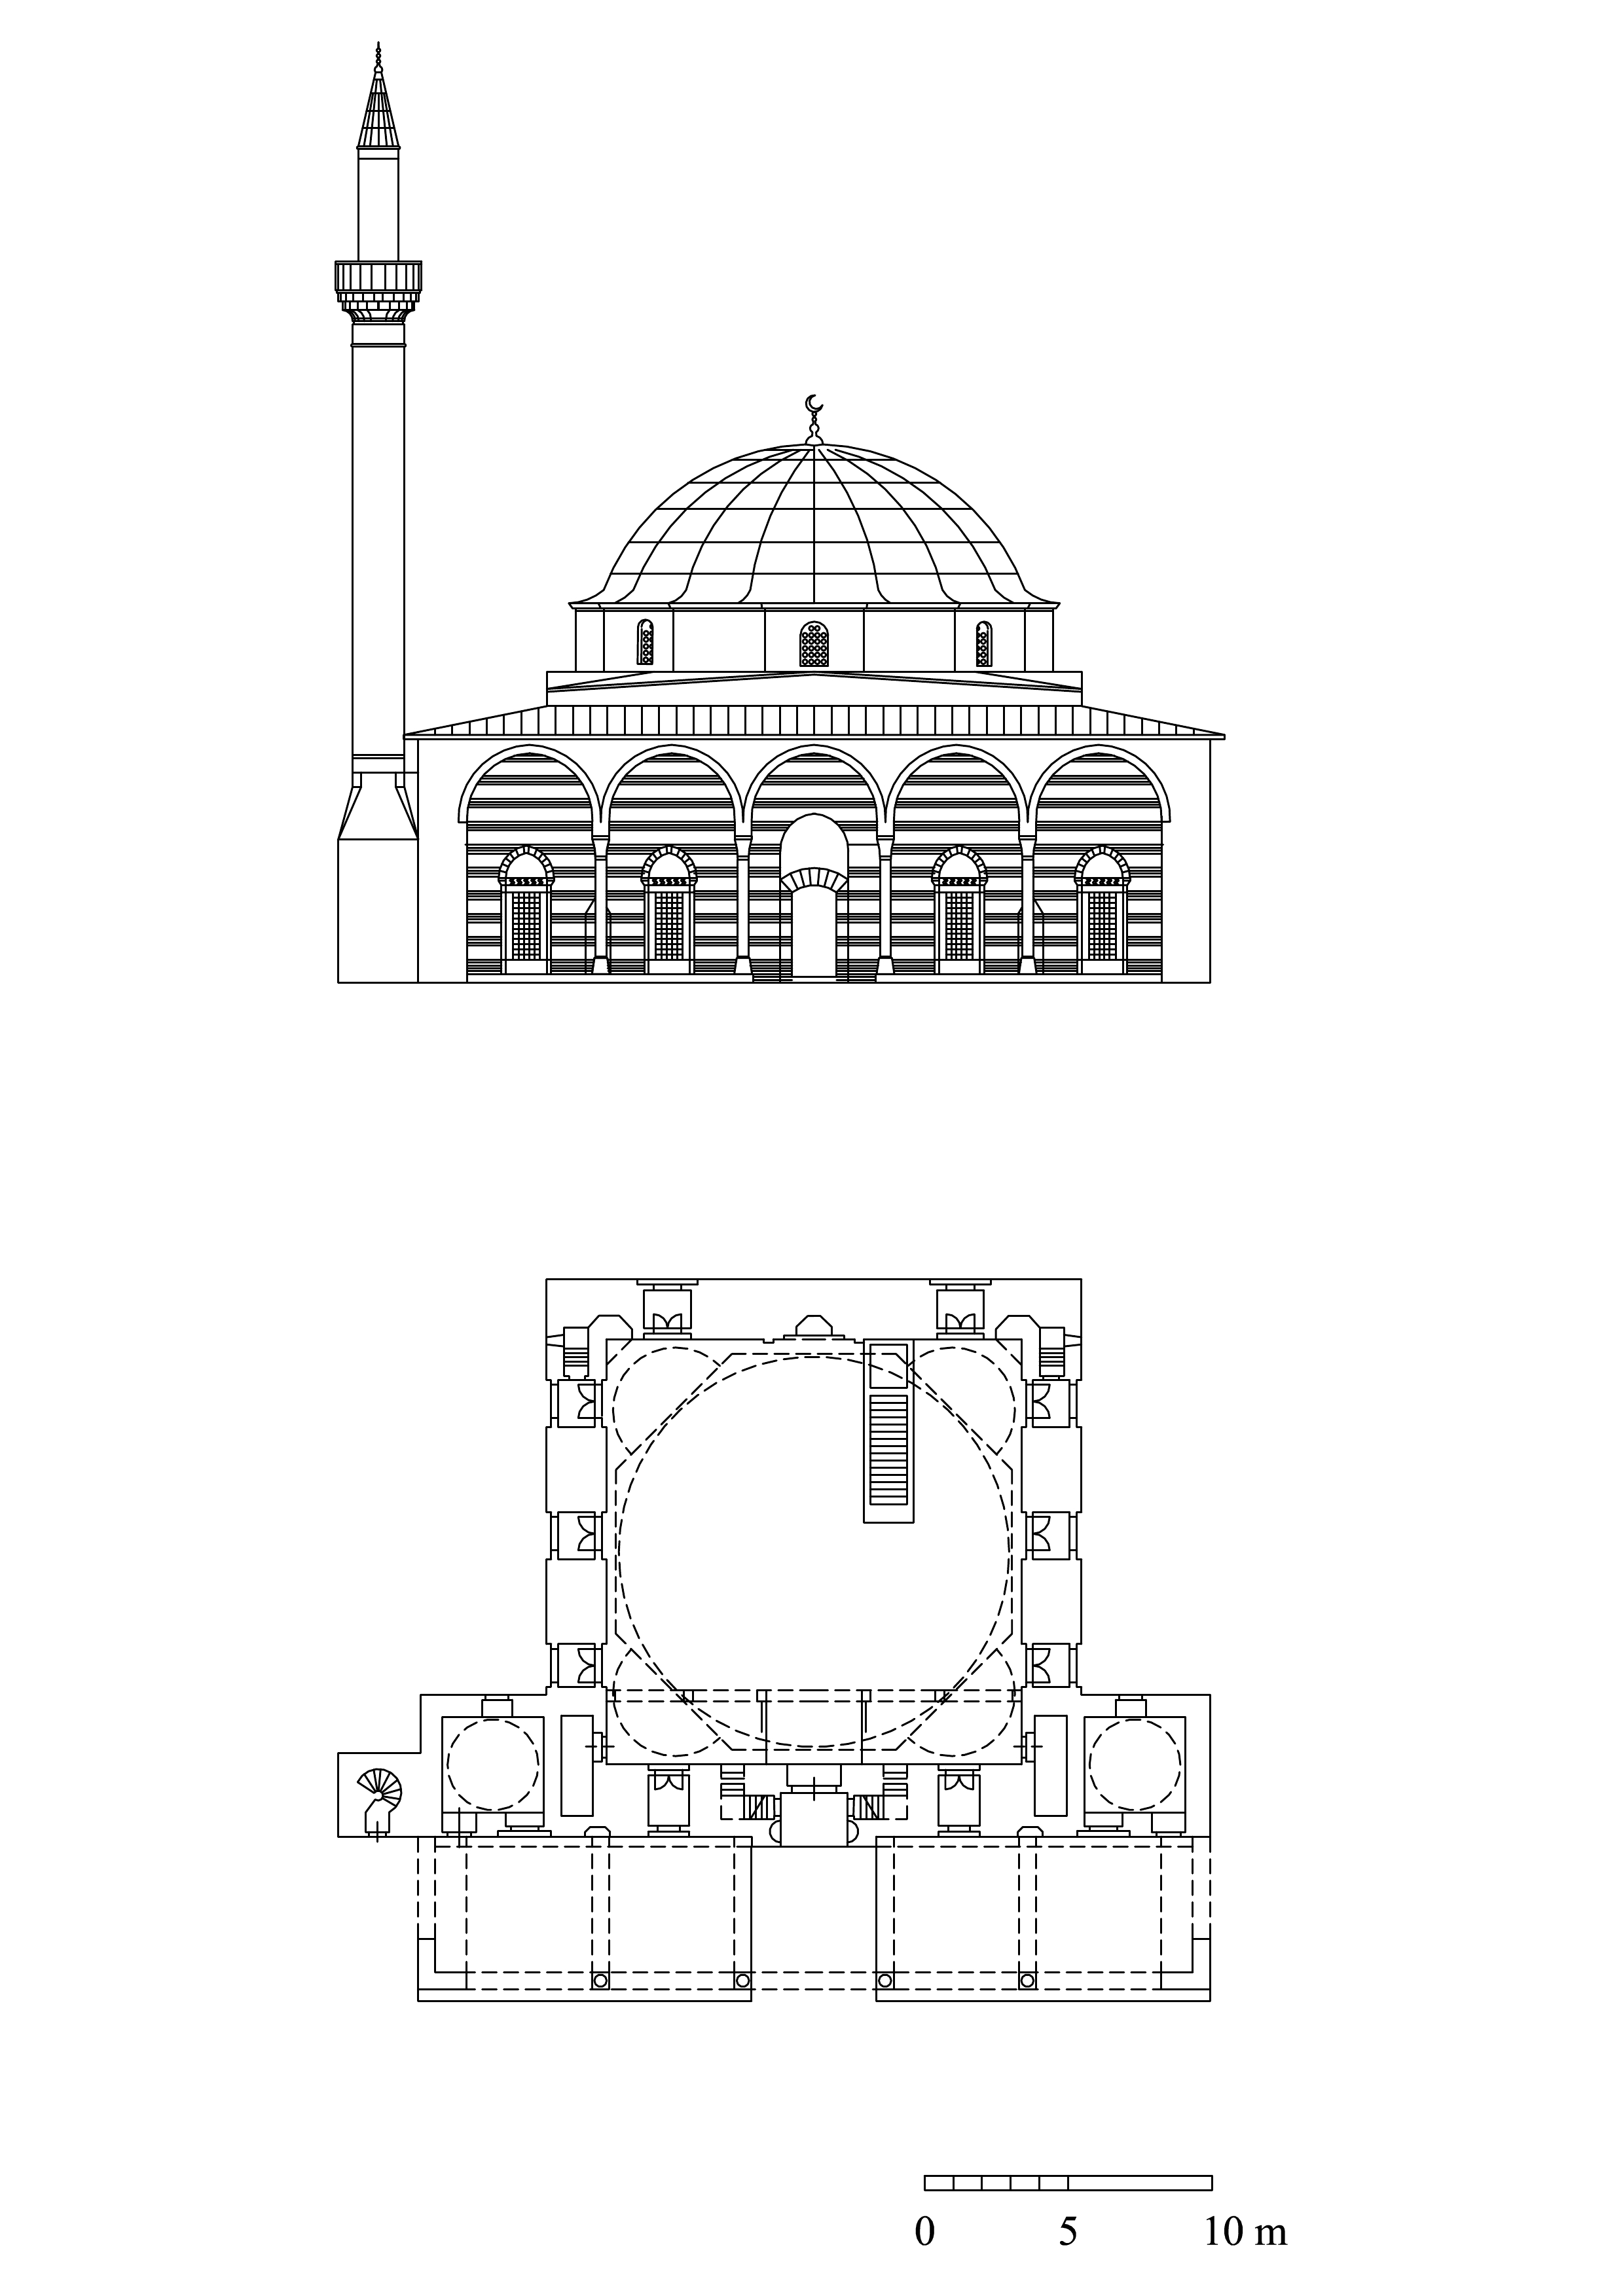 Floor plan and elevation of Diyarbakir Iskender Pasa Mosque